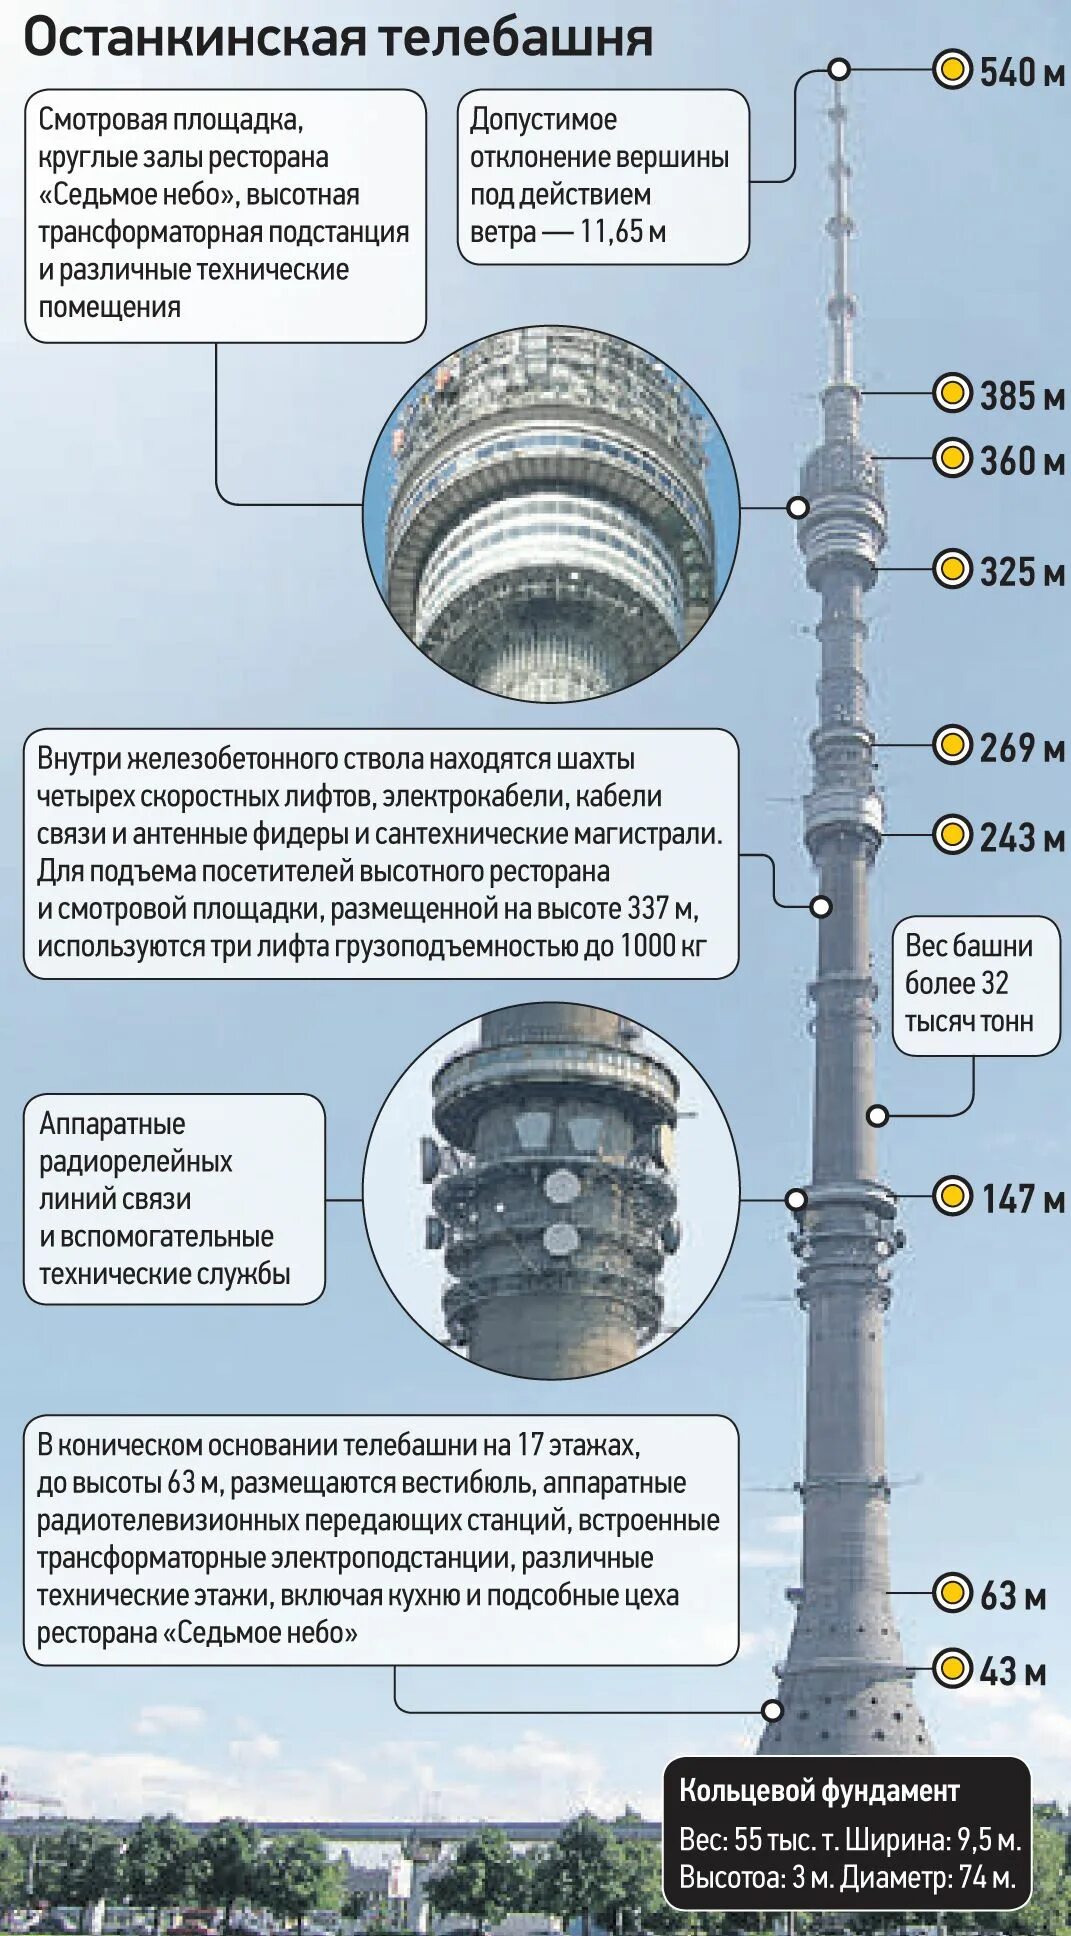 Сколько этажей в останкинской. Высота Останкинской башни. Высота телебашни Останкино в Москве. Высота Останкинской башни в метрах. Диаметр Останкинской башни.